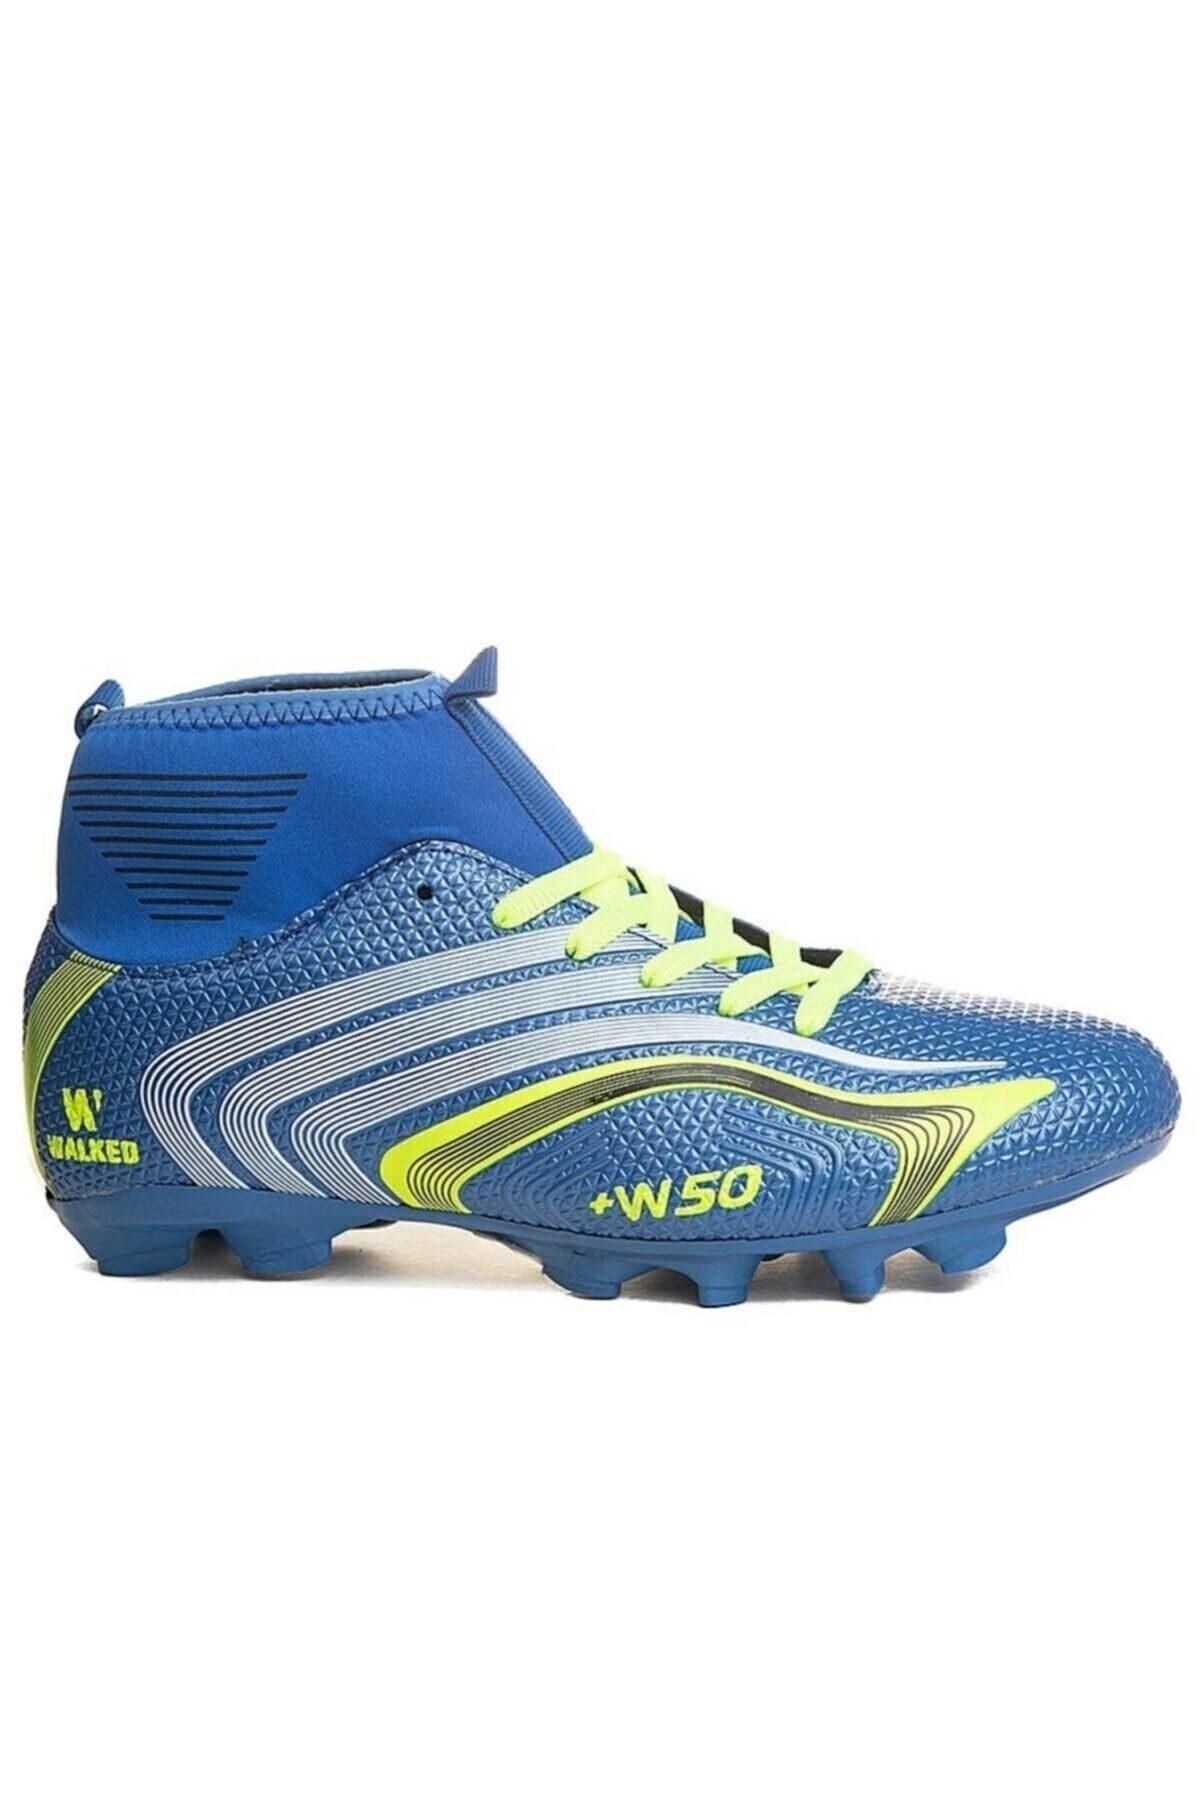 Lion Super Mercury Bilekli Çoraplı Halısaha Çim Dişli Krampon Futbol Ayakkabısı 435 Mavi Sarı